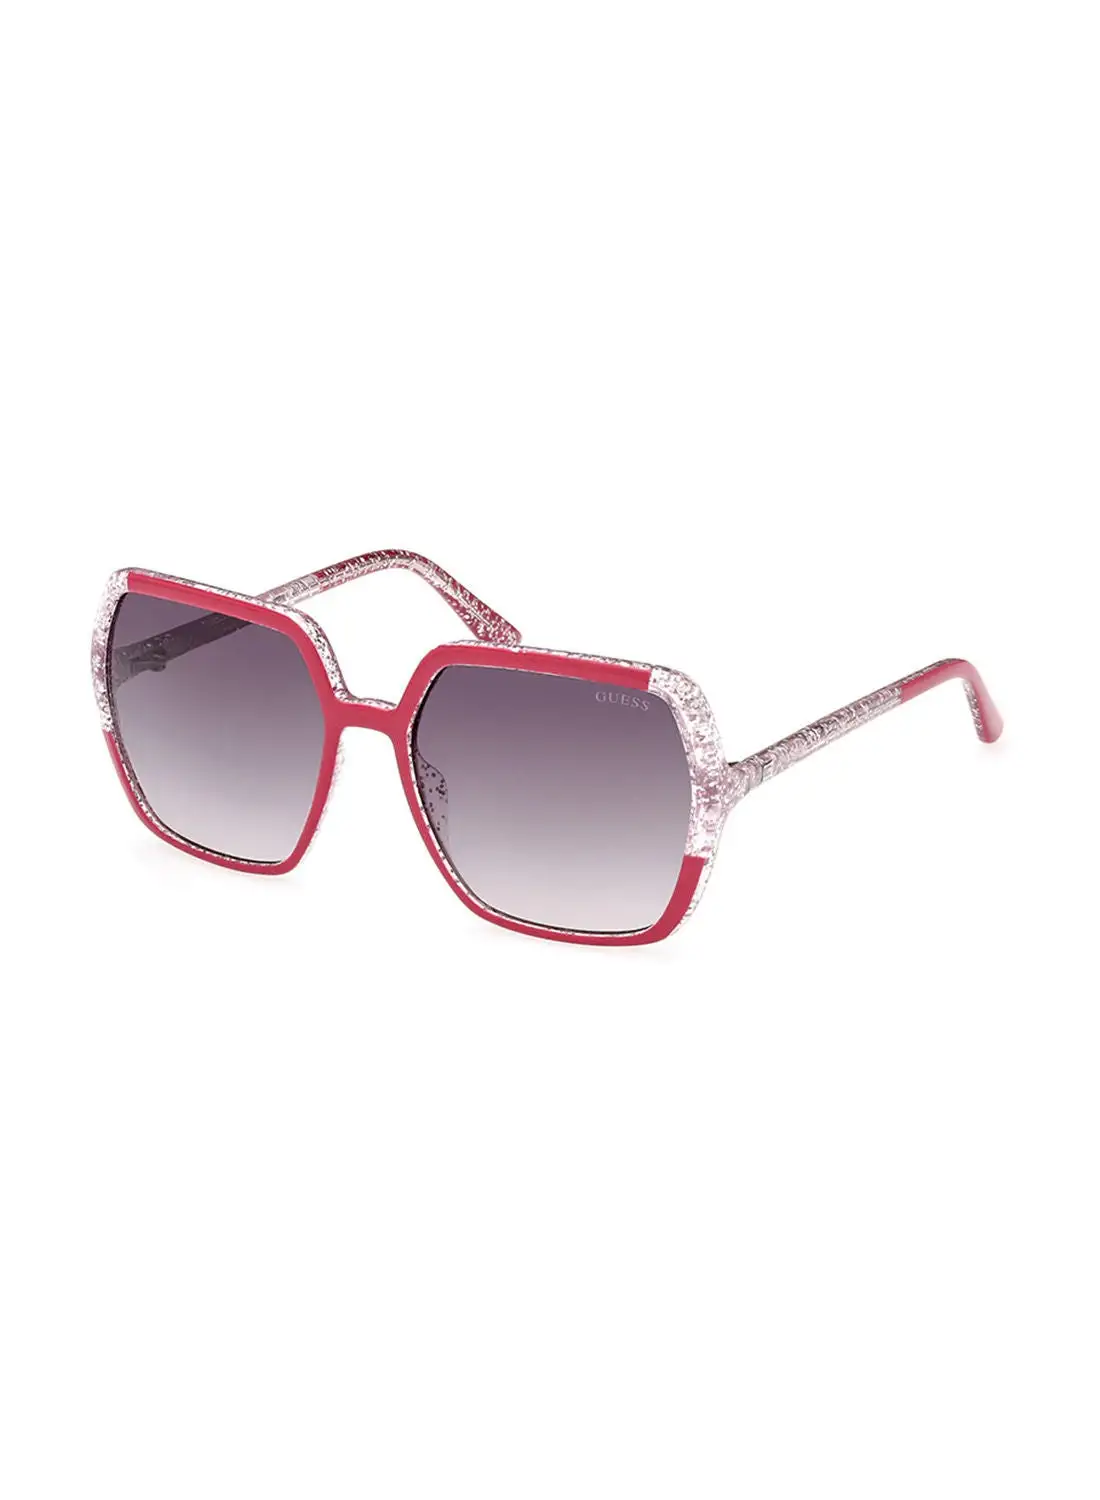 GUESS Sunglasses For Women GU788375B56